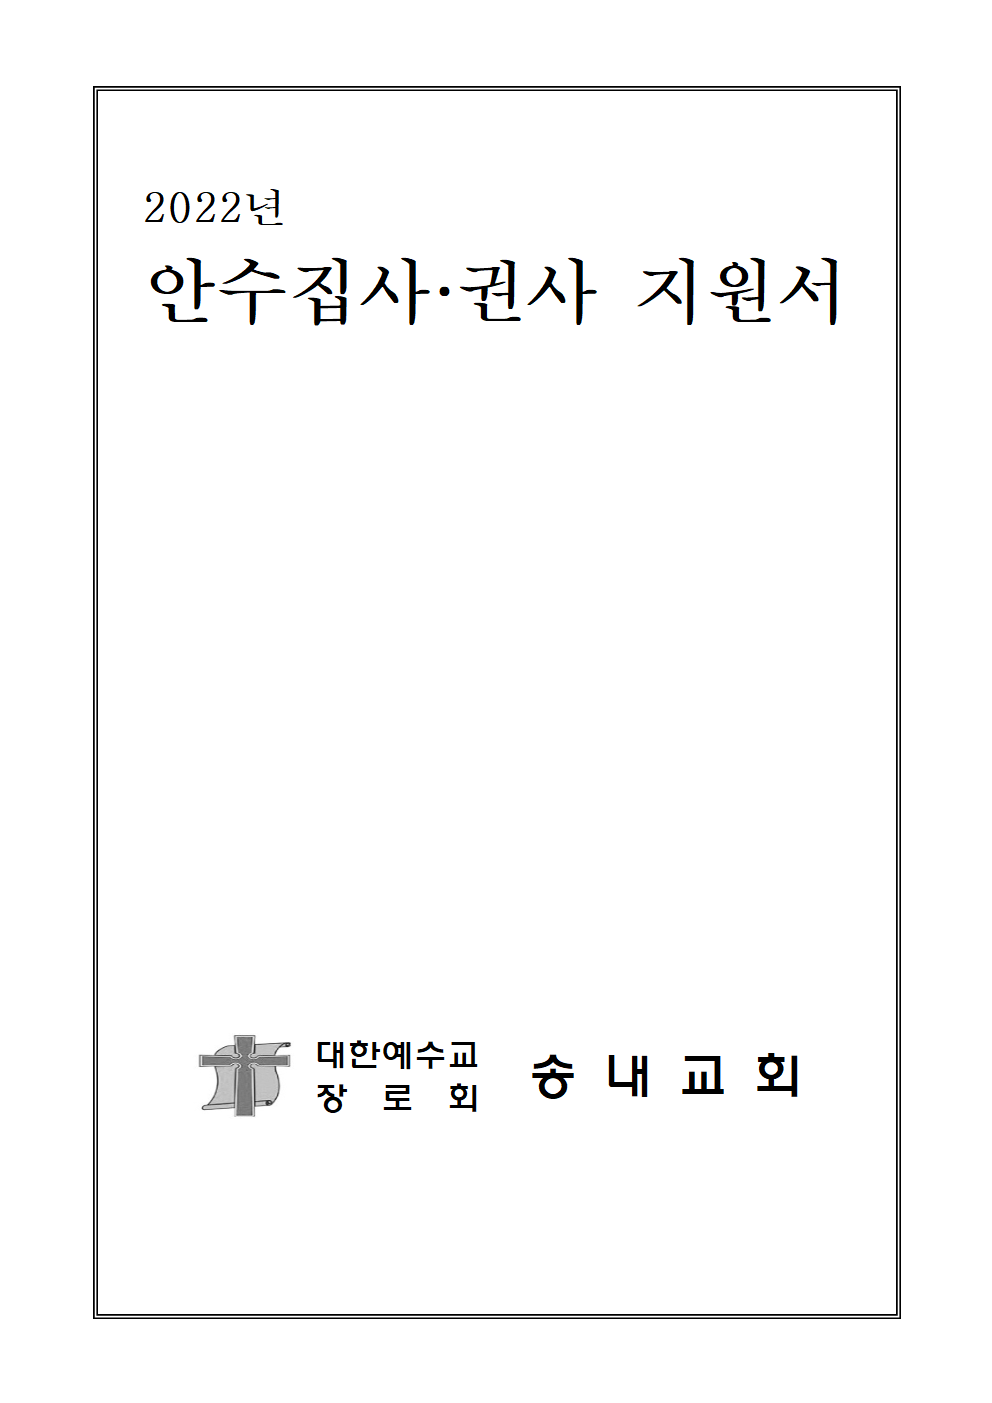 송내교회 안수집사.권사 후보 지원서 (1)004.png